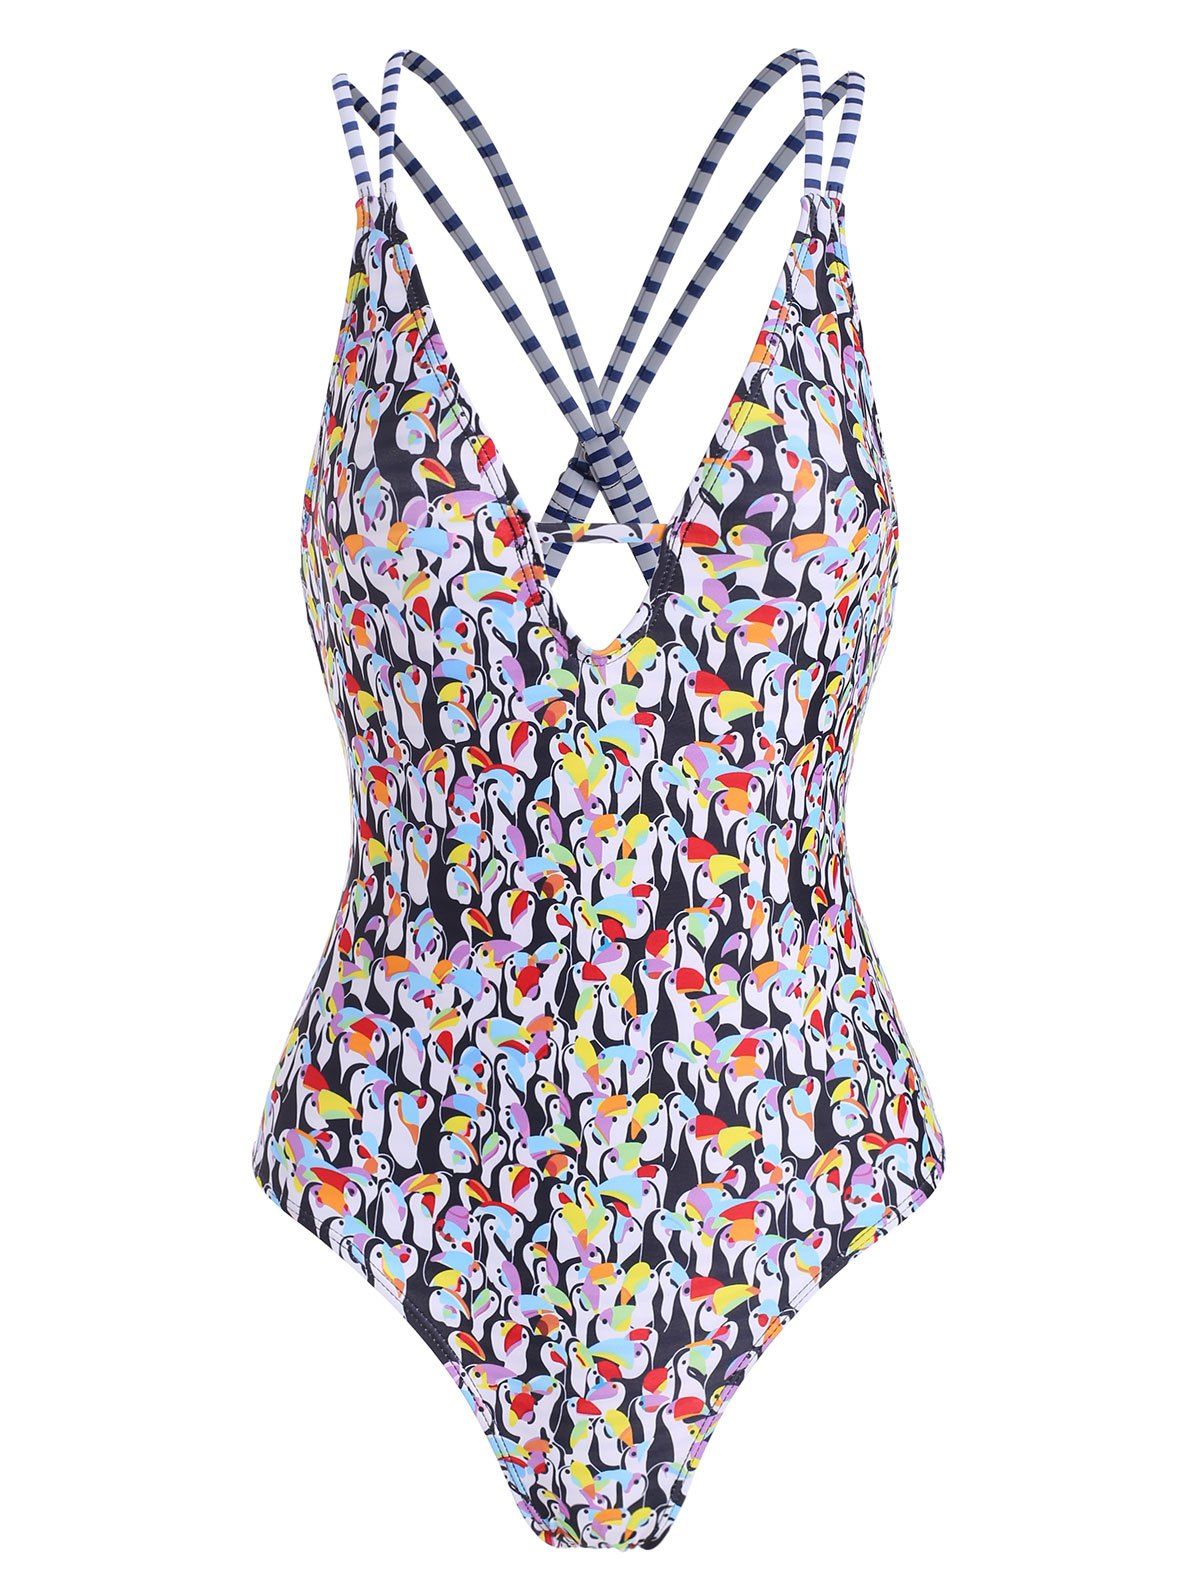 Penguin Print Deep V One-piece Swimsuit - COLORMIX M